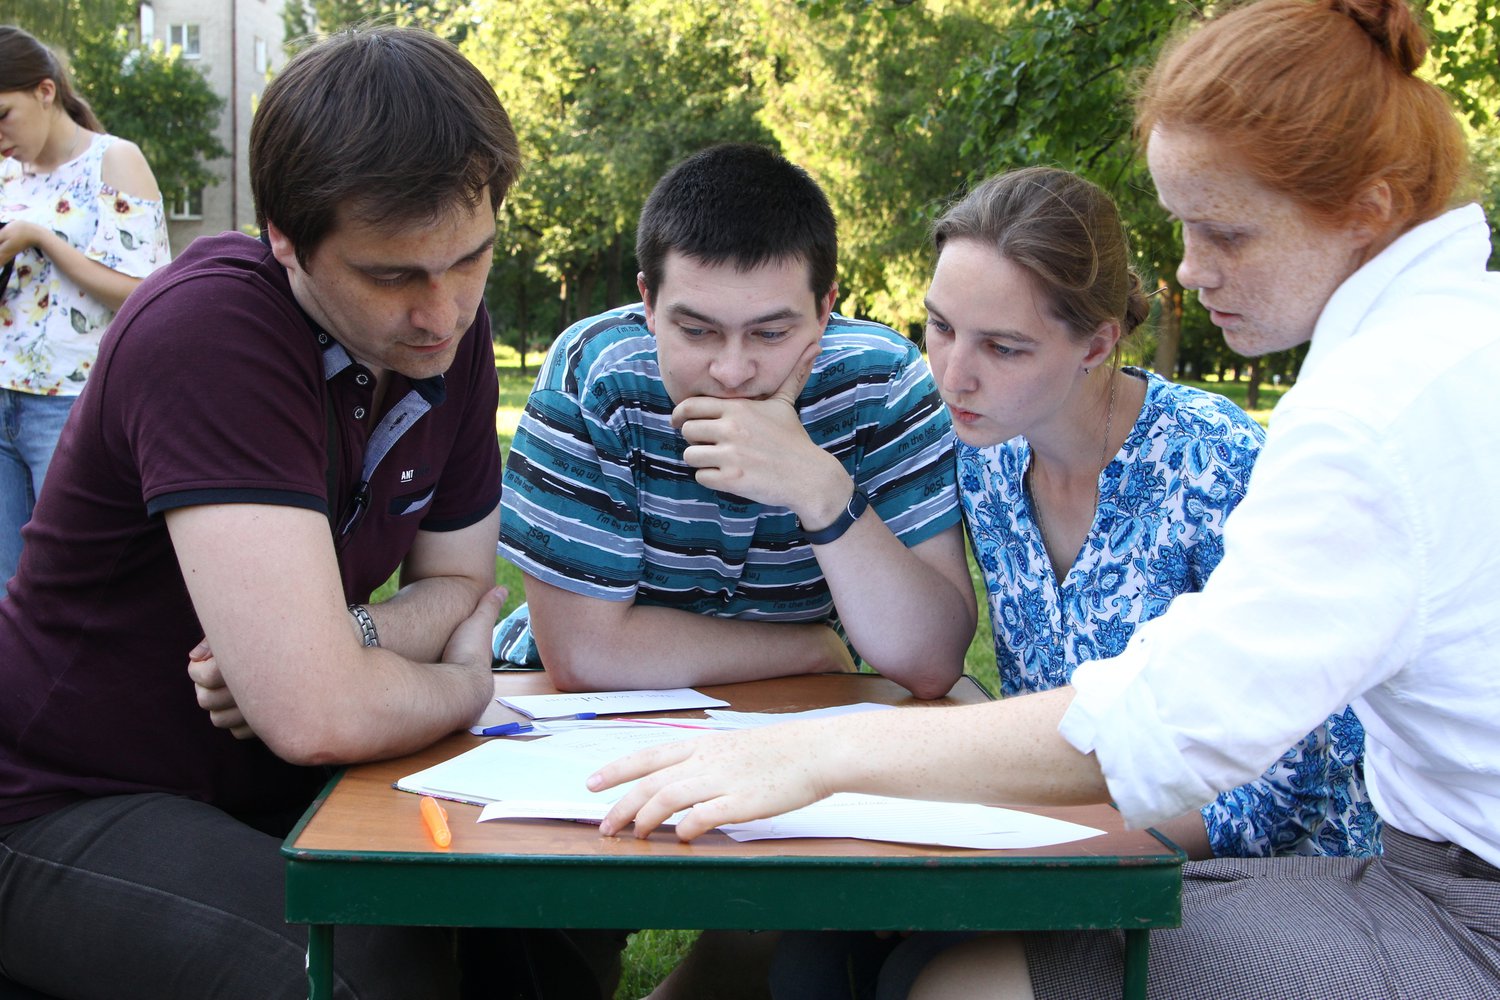 27 июня в 13:00 Молодёжный центр Пскова проведёт онлайн-квиз, приуроченный ко Дню Молодёжи.